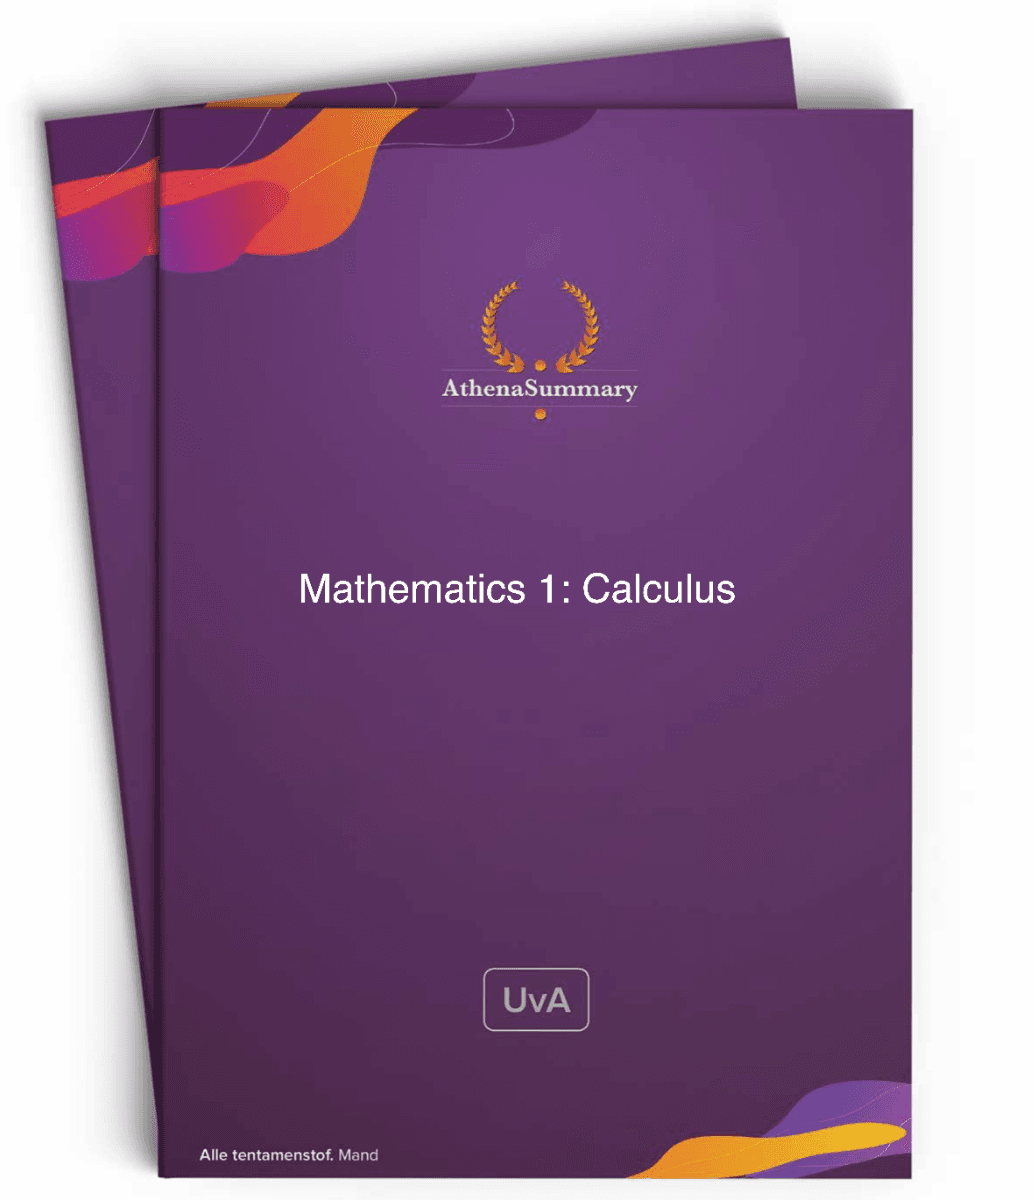 Literature Summary: Mathematics 1: Calculus